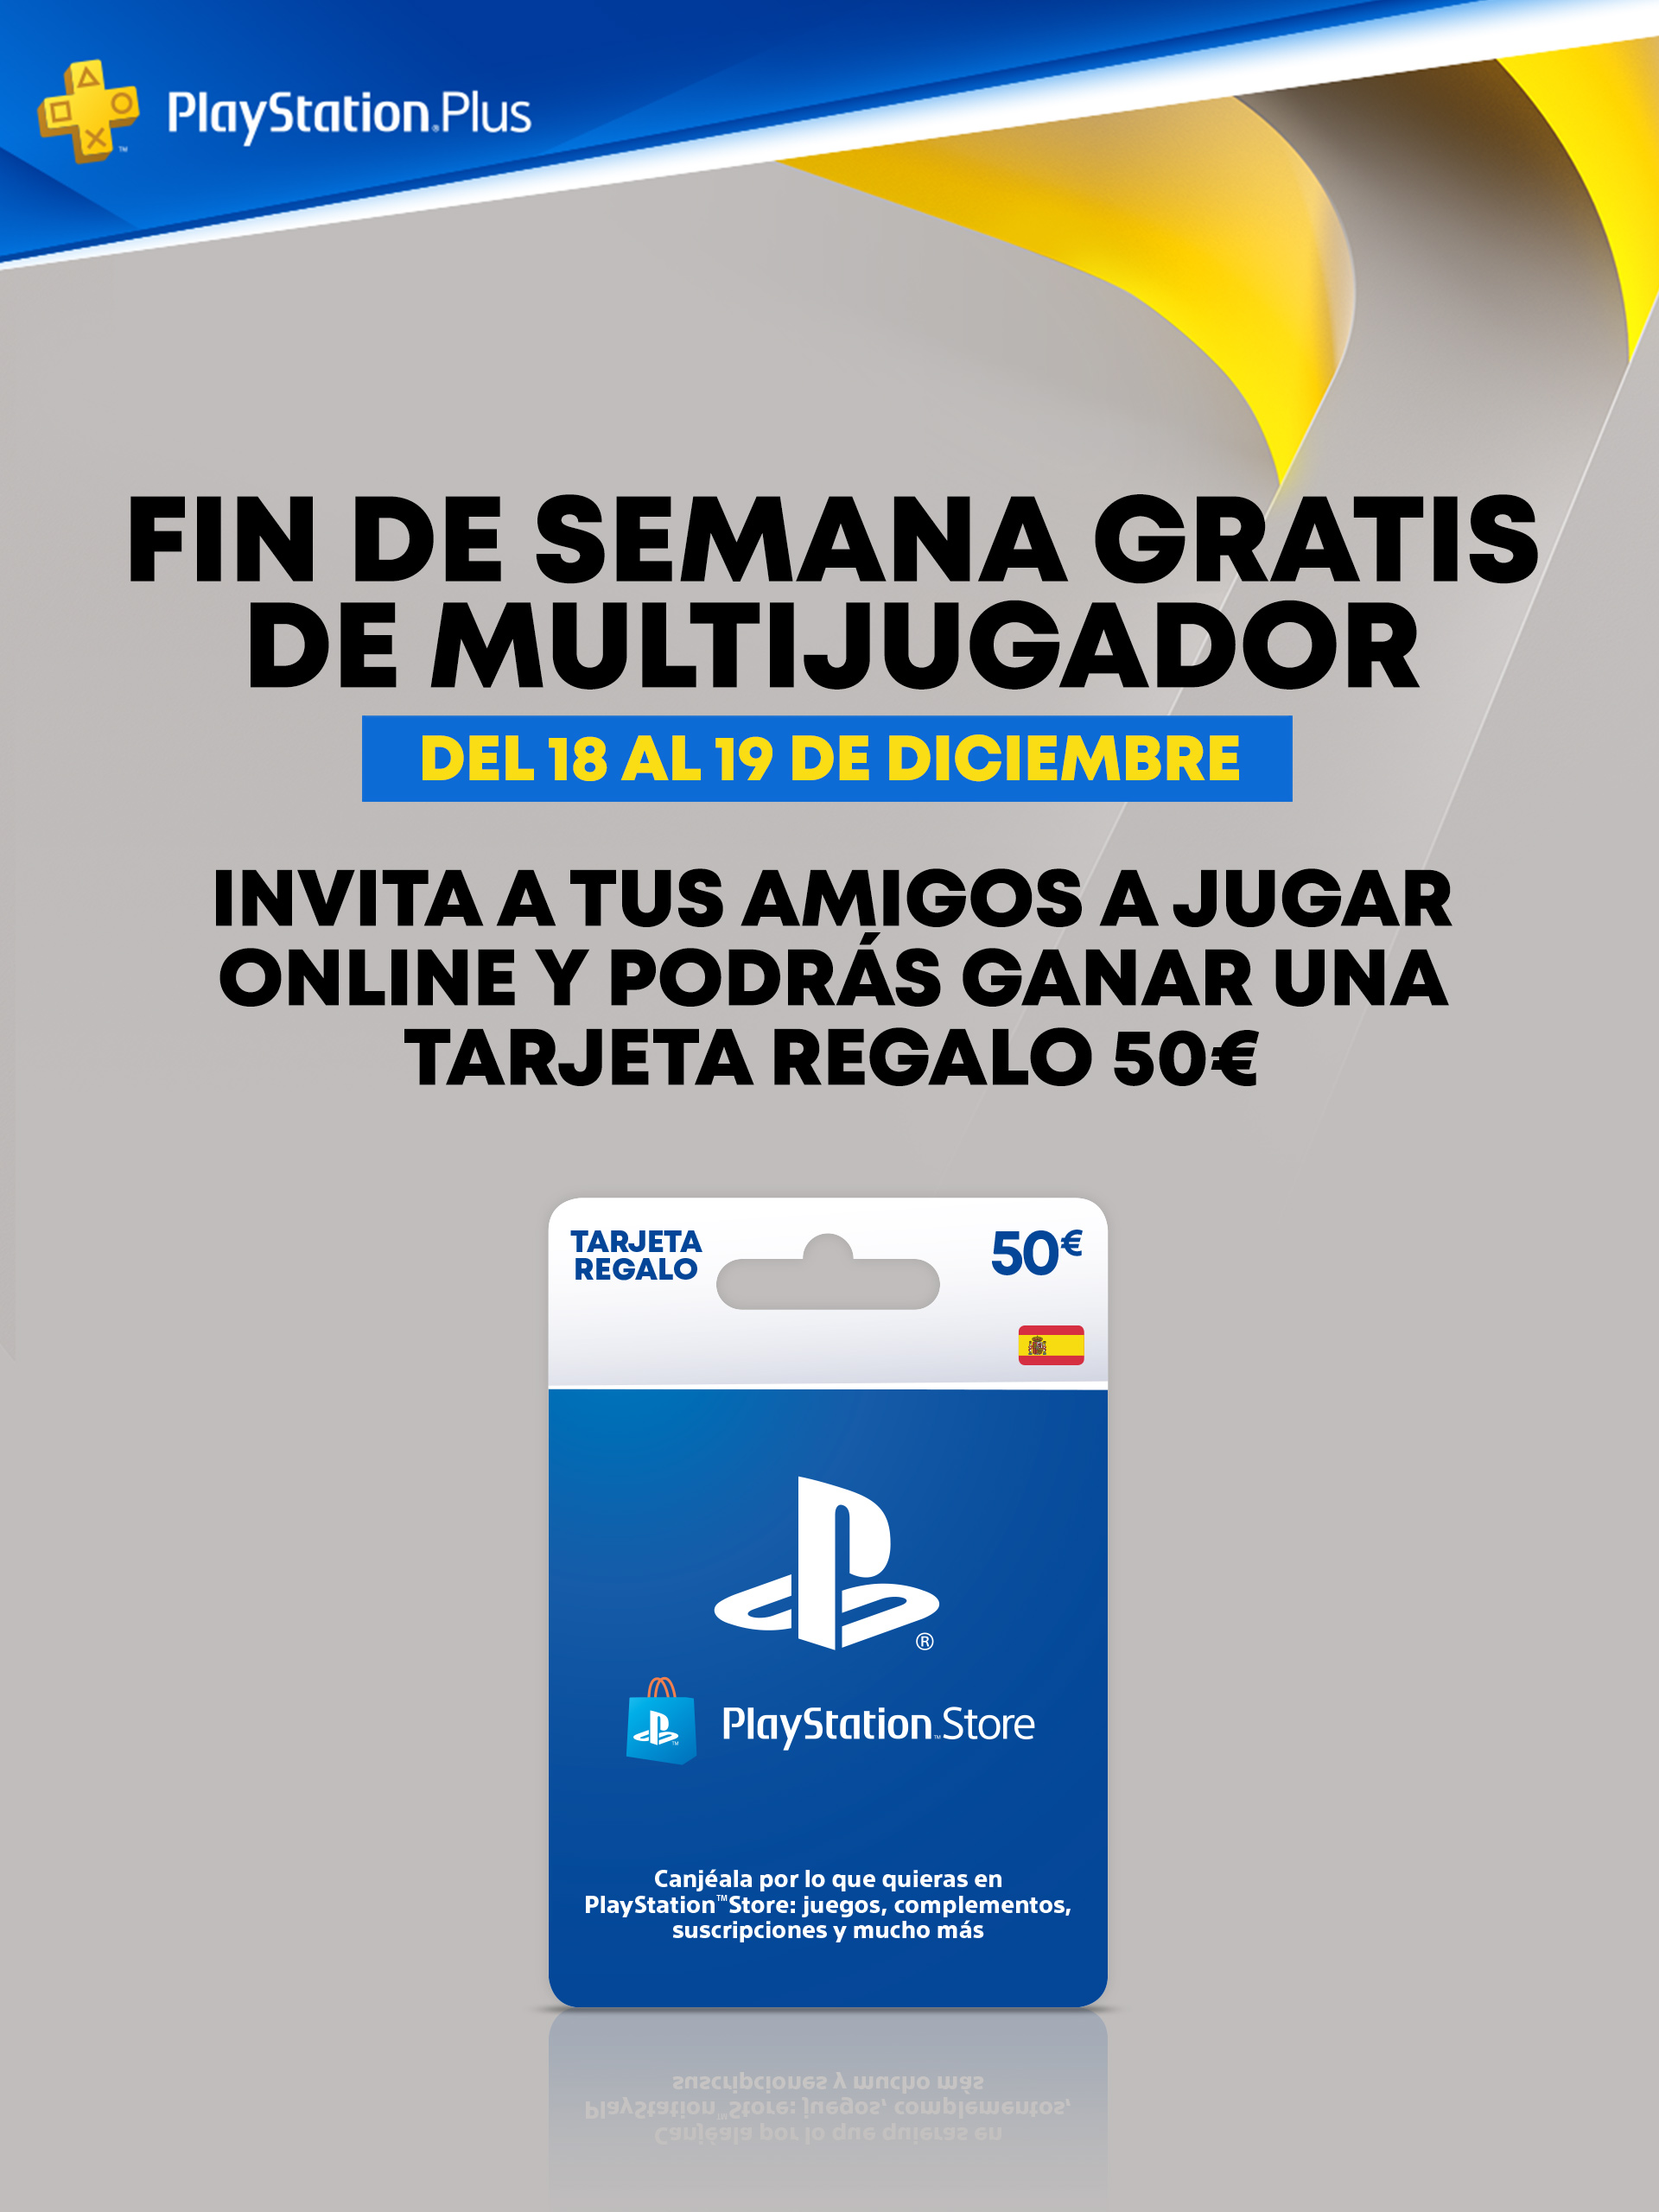 Fantástico salvar petróleo PlayStation Plus España on Twitter: "Disfruta este finde del multijugador  online gratis🎉Lo celebramos SORTEANDO 1 código de 50€ para #PSStore.  ✓Síguenos y haz RT 🎮Twittea con #PSPlusOpenWeekend el juego que vas a